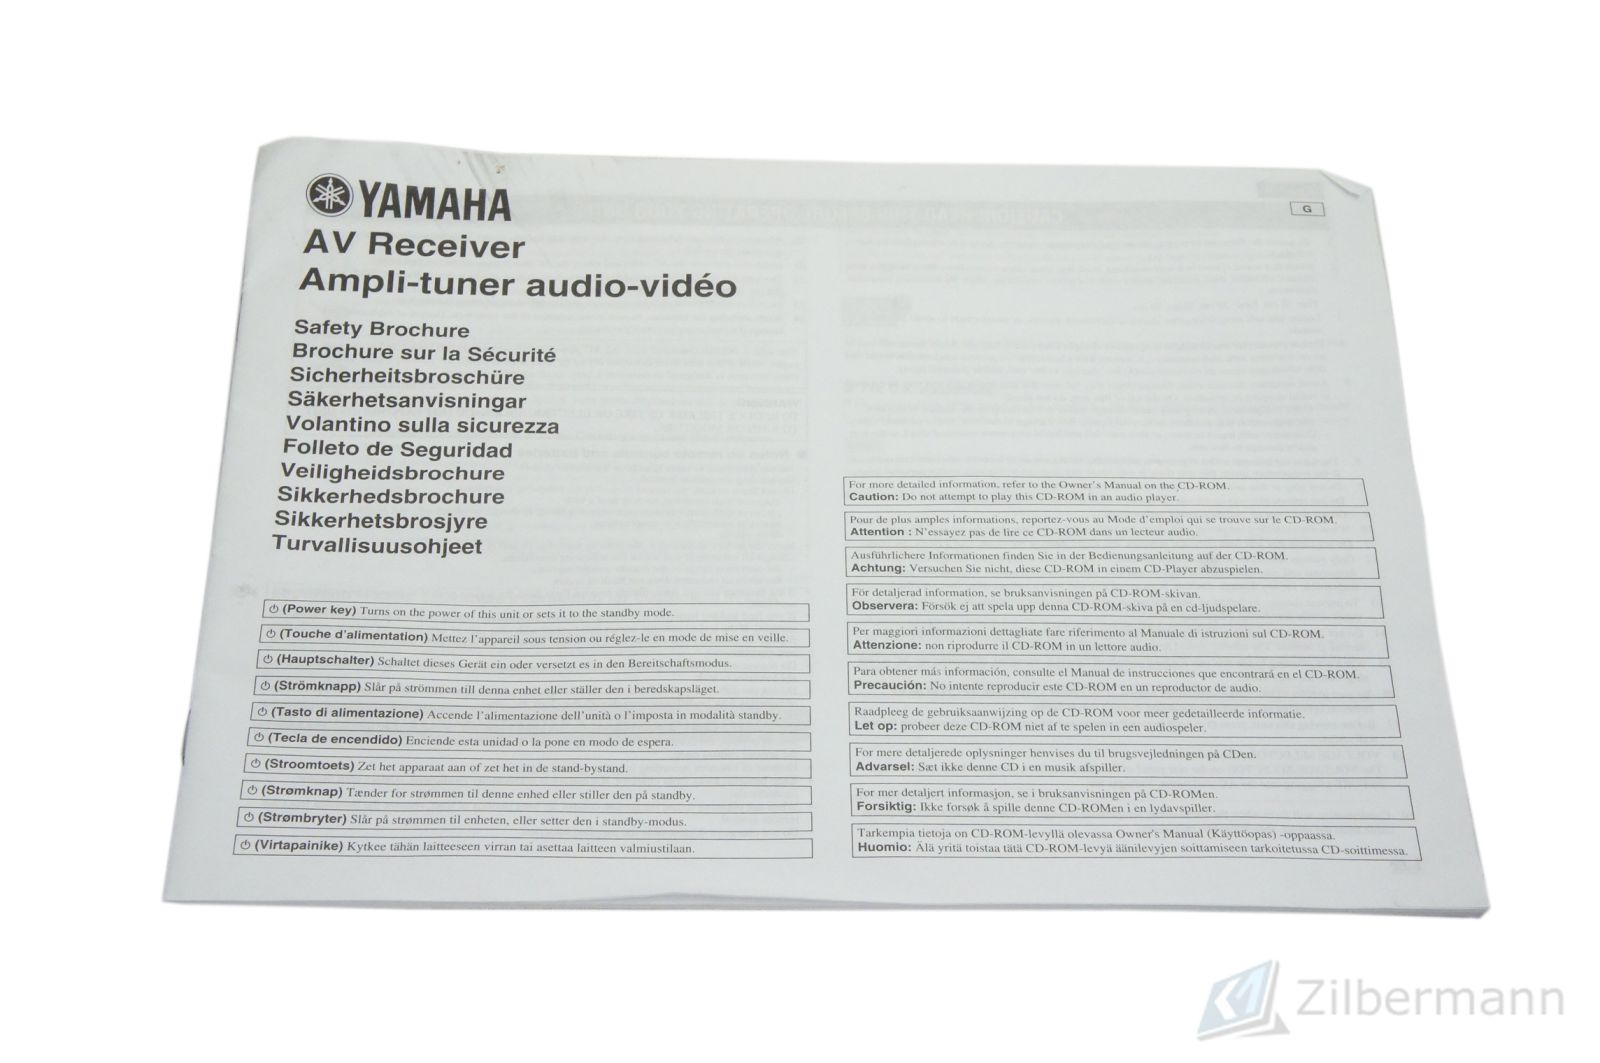 Yamaha_RX-V473_5.1_AV-Receiver_13